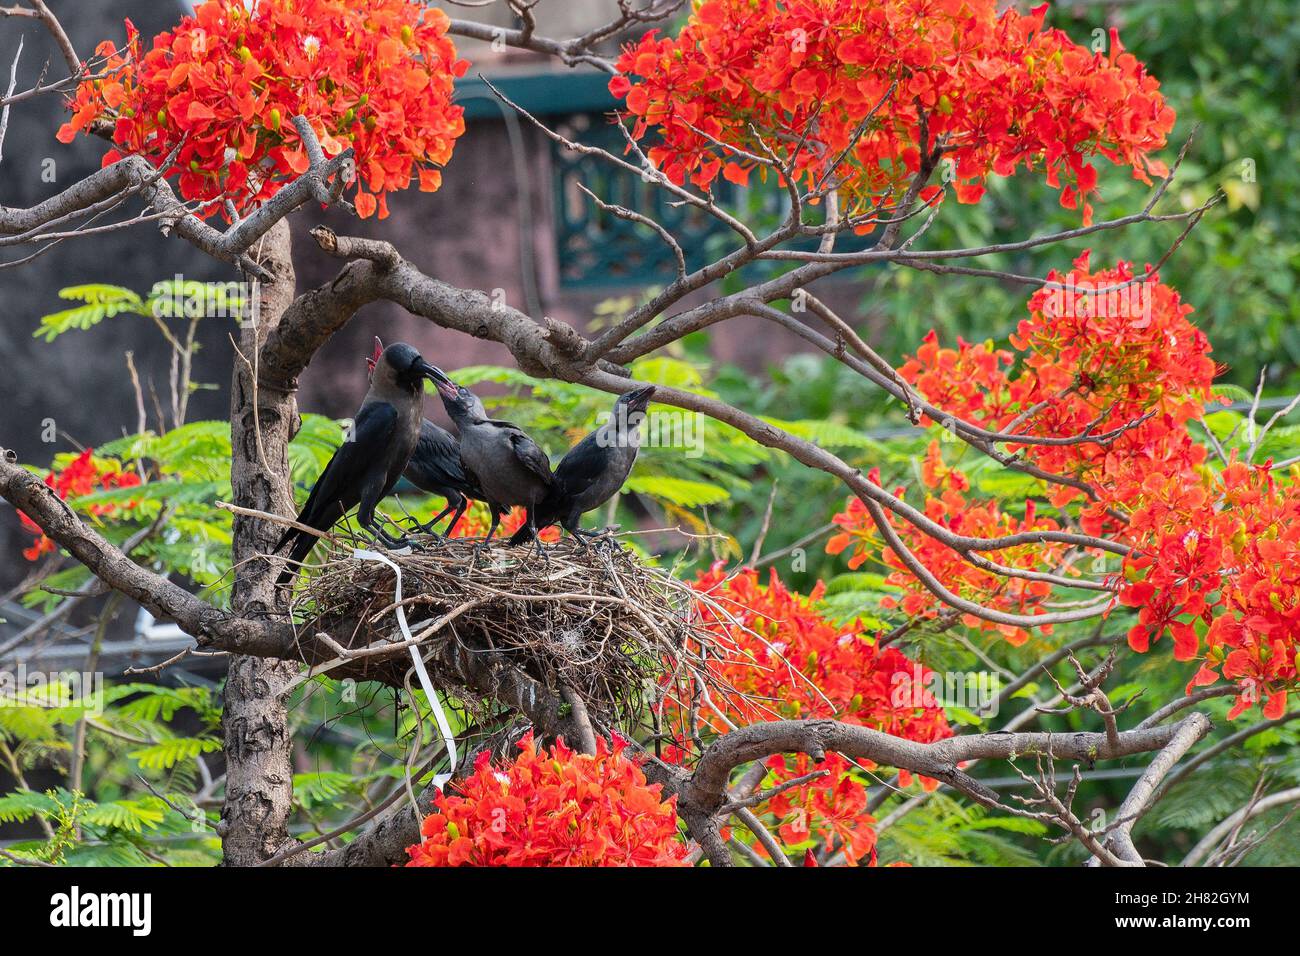 Corbeau de maison (Corvus splendens) oiseau nourrissant bébé et jeunes oiseaux dans le nid.Connu sous le nom d'Indien, le corbeau gris, Ceylan ou Colombo est un bi commun Banque D'Images